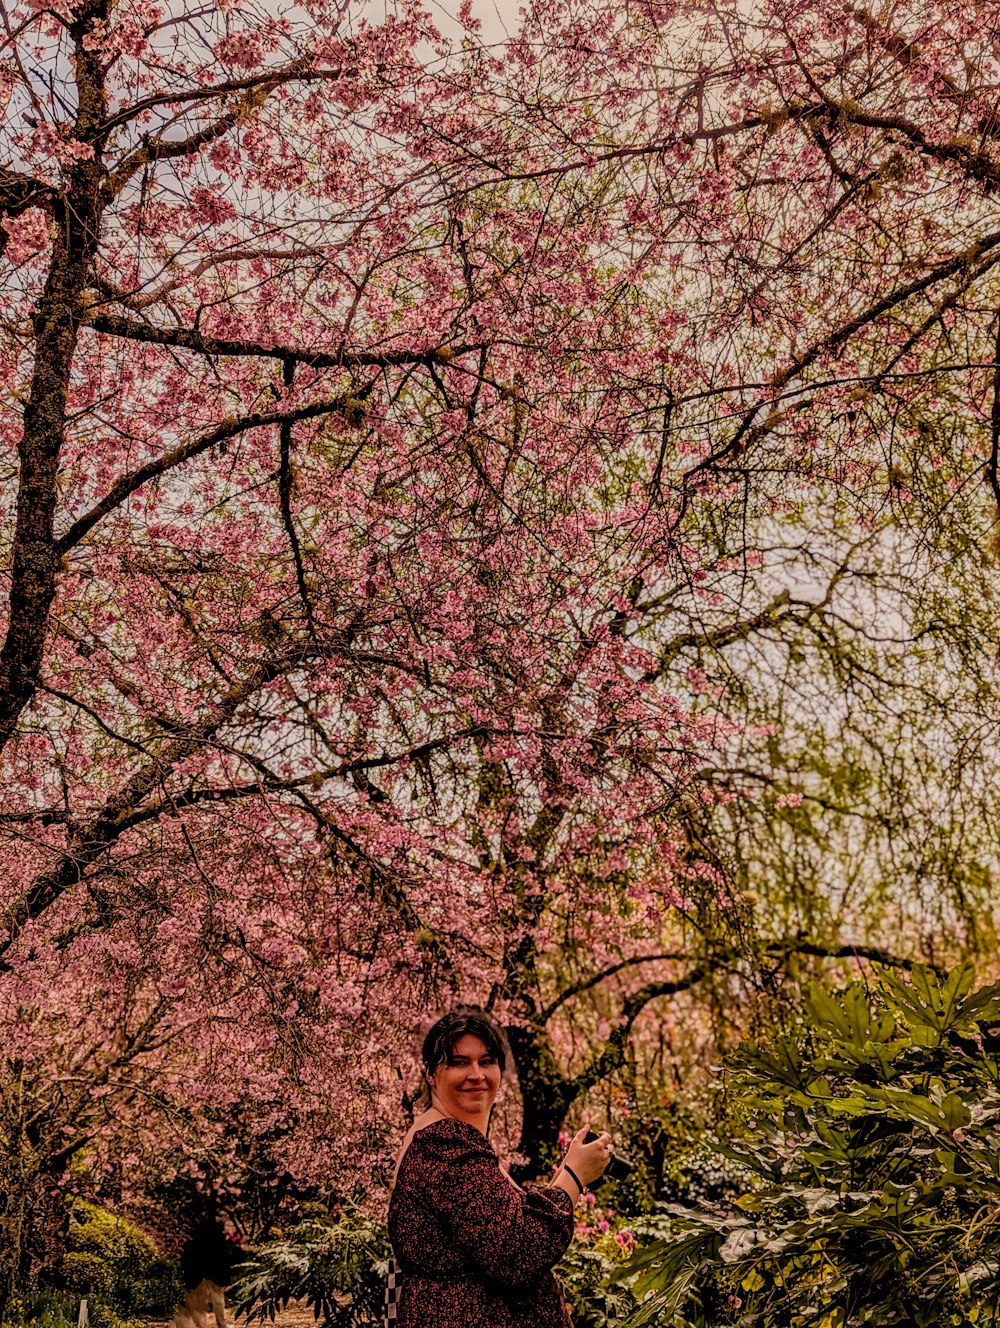 분홍색 꽃이 피는 나무 앞에 서 있는 여자